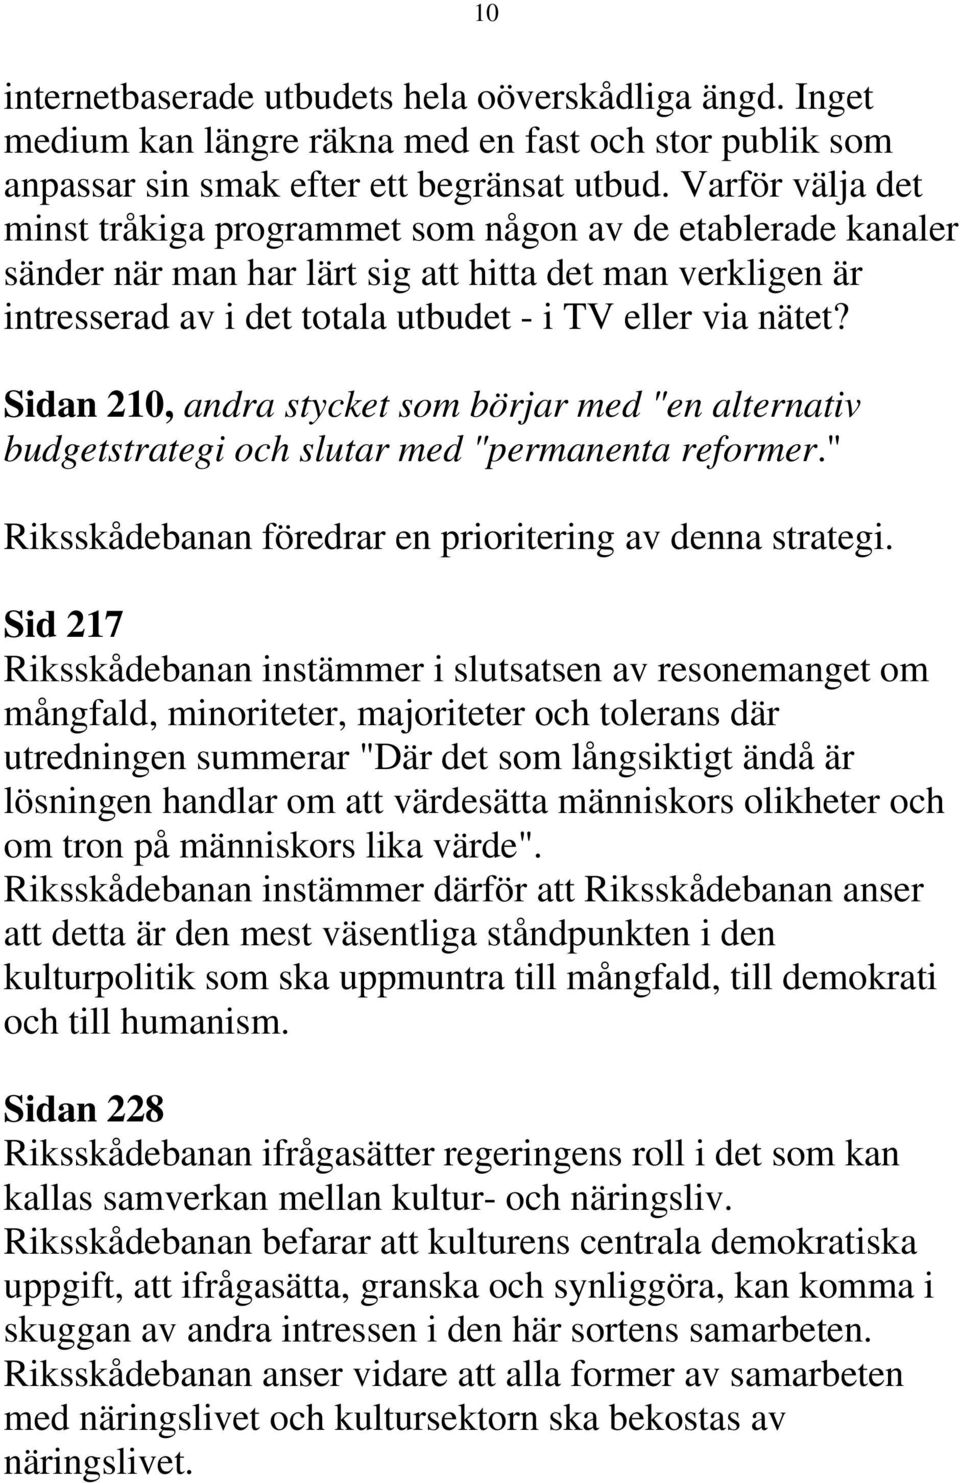 Sidan 210, andra stycket som börjar med "en alternativ budgetstrategi och slutar med "permanenta reformer." Riksskådebanan föredrar en prioritering av denna strategi.